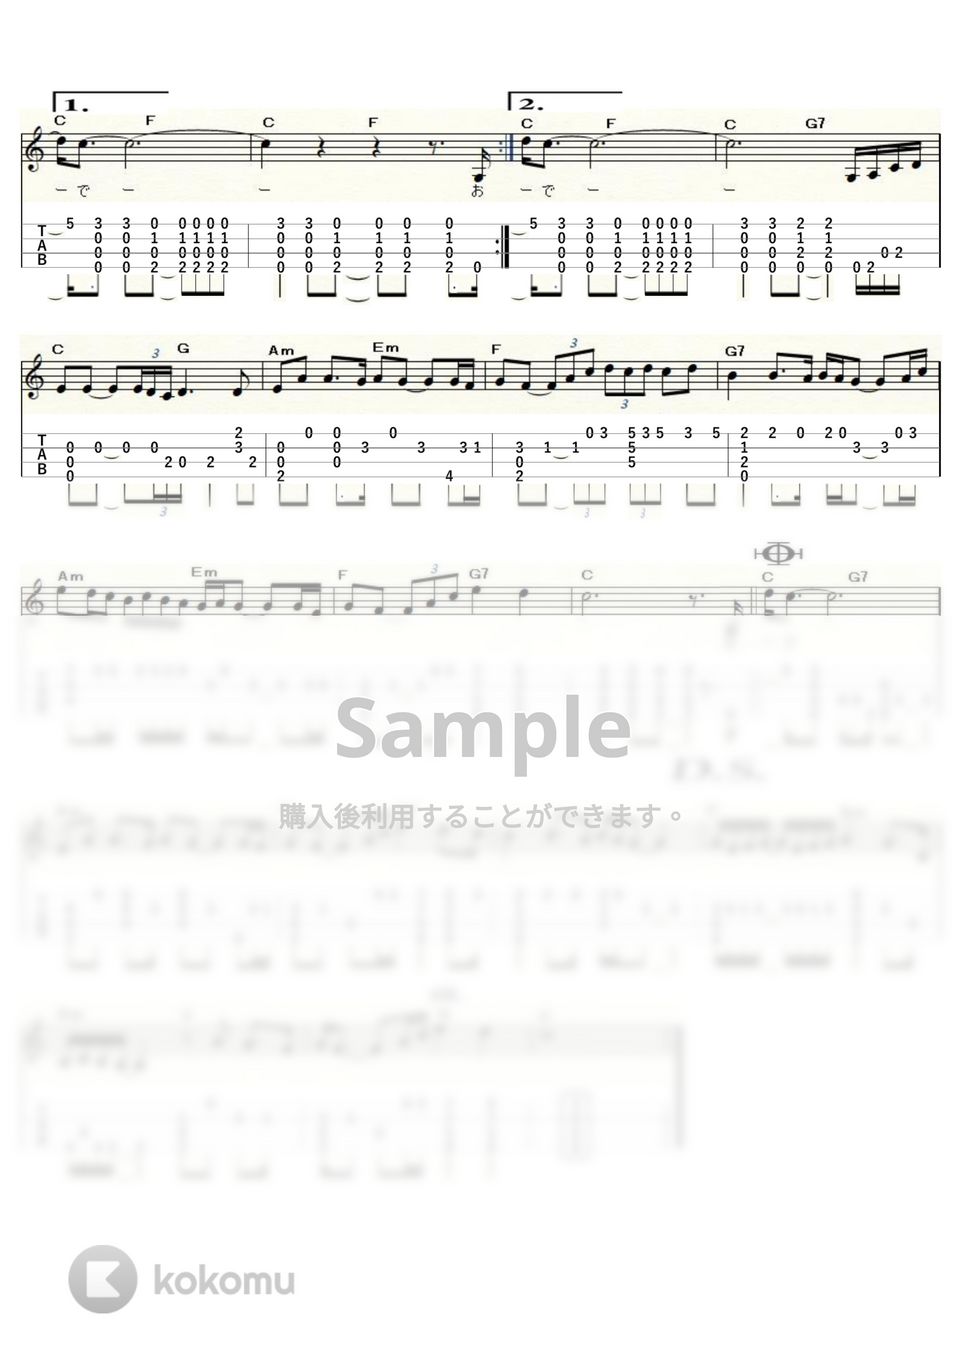 アリス - 遠くで汽笛を聞きながら (ｳｸﾚﾚｿﾛ / Low-G / 中級) by ukulelepapa